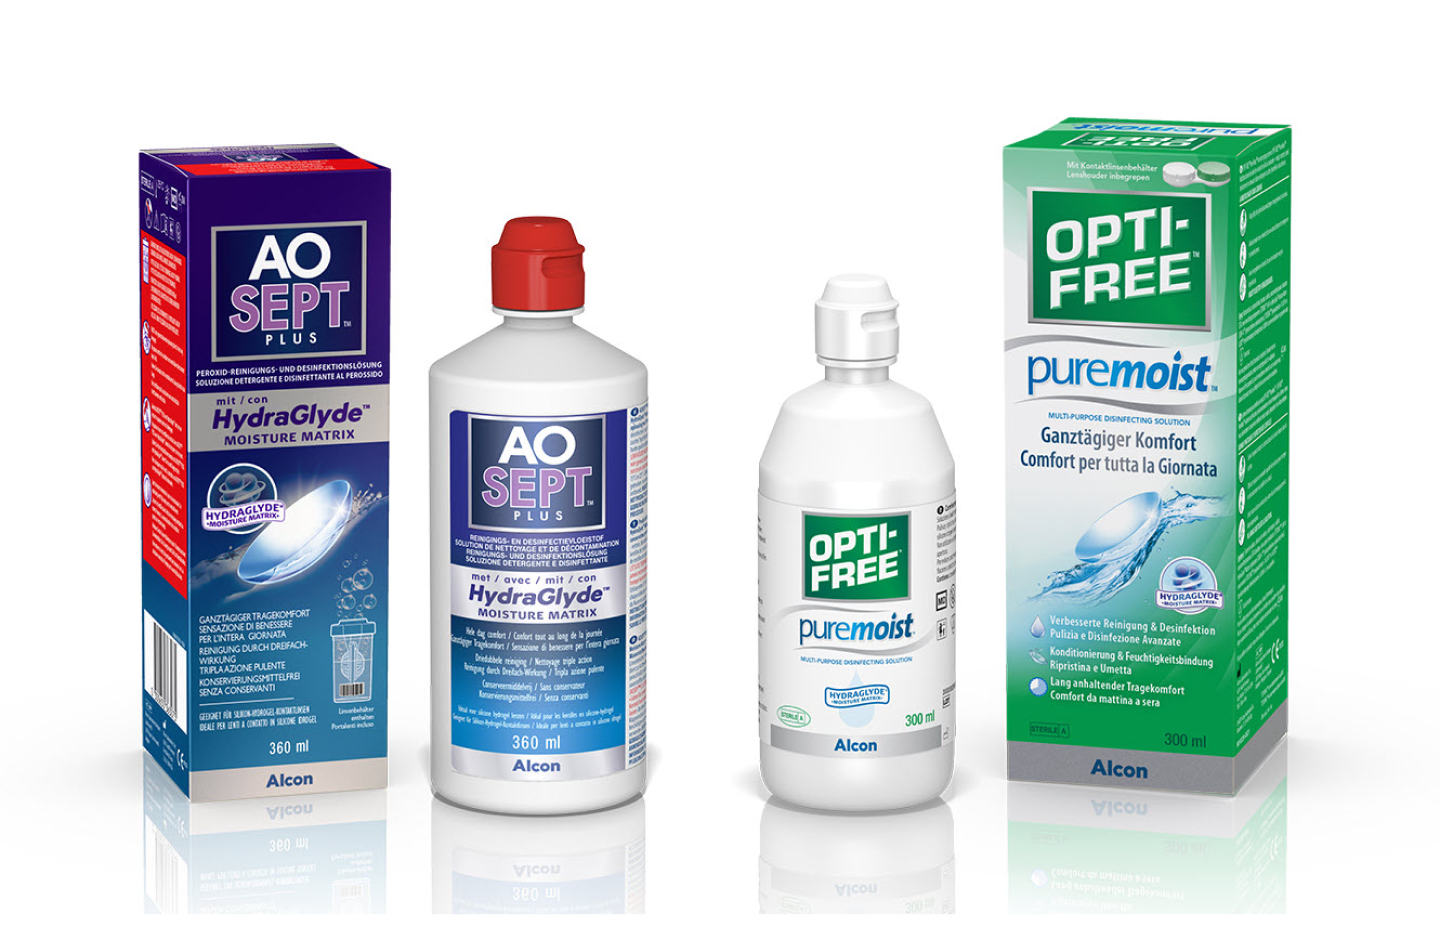 Produktverpackung und Flasche von AO Sept und Opti-free Puremoist Kontaktlinsenlösung von Alcon